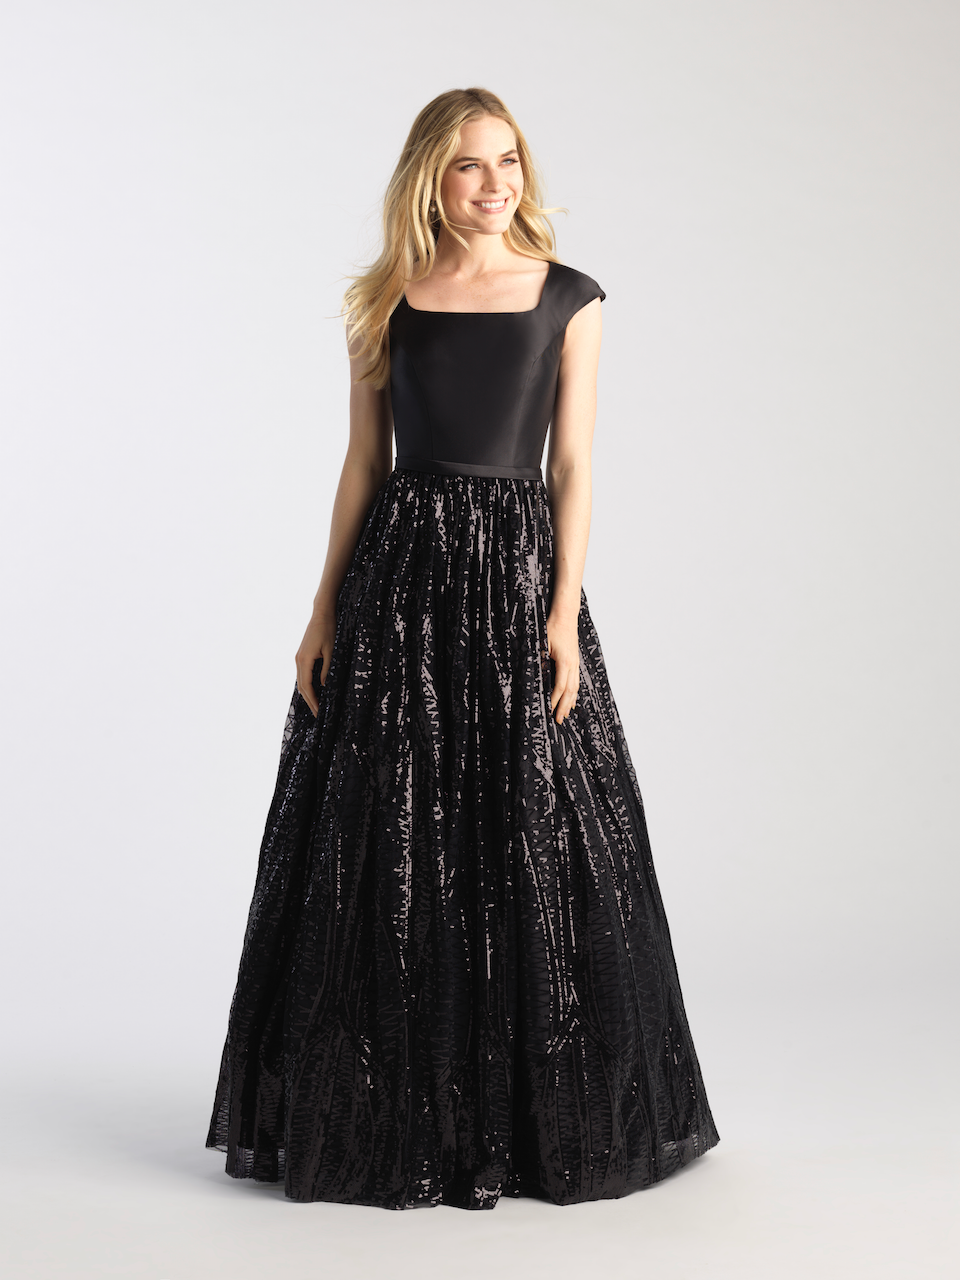 MJ 20-509M Black Modest Prom Dress | A ...